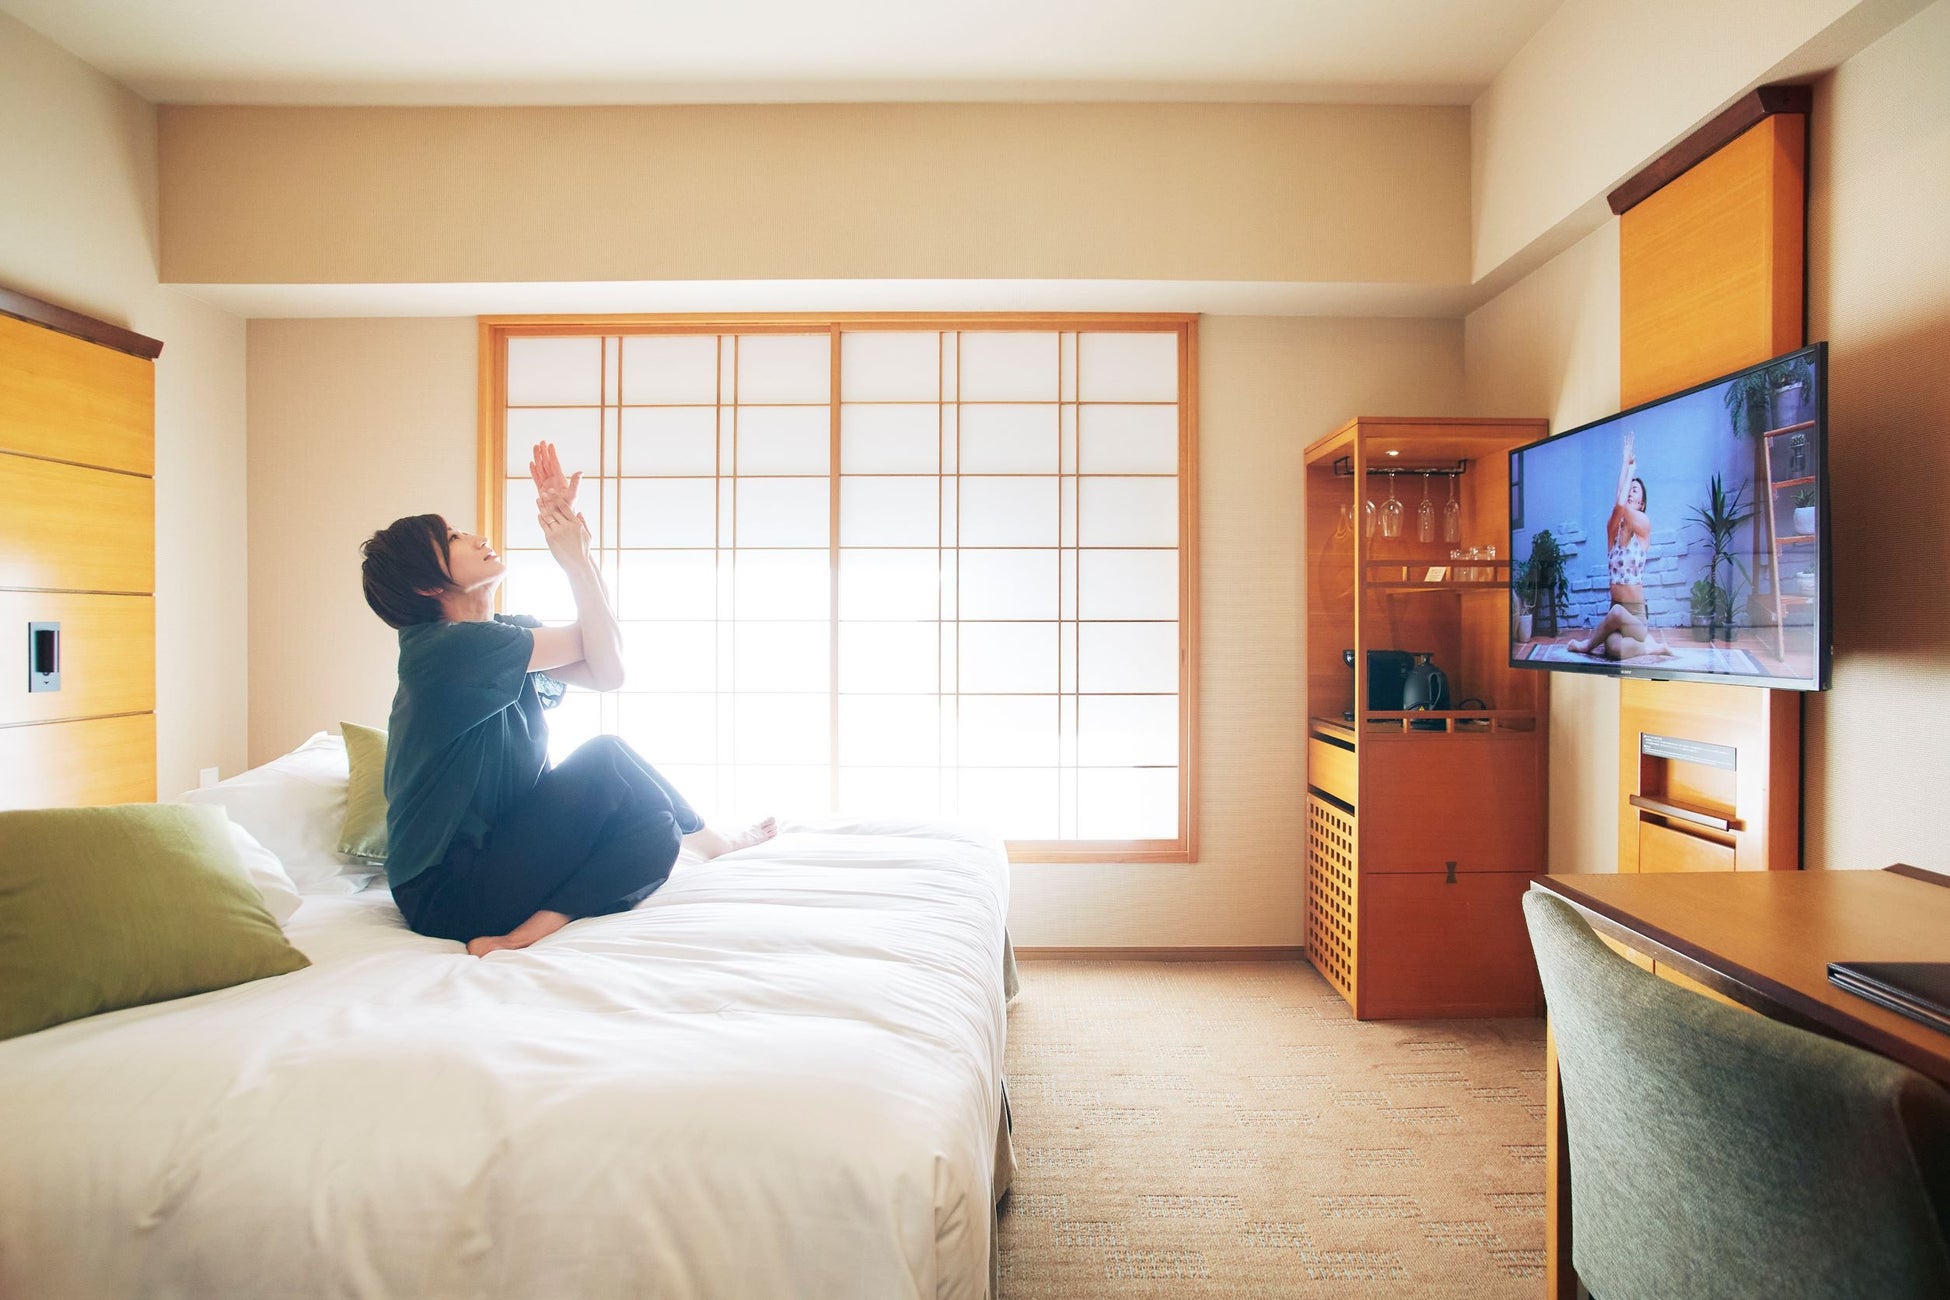 庭のホテル 東京 × スポーツクラブ　「メガロス」ウェルネス動画プログラム 「インルームリラクサイズ」サービス開始のお知らせ